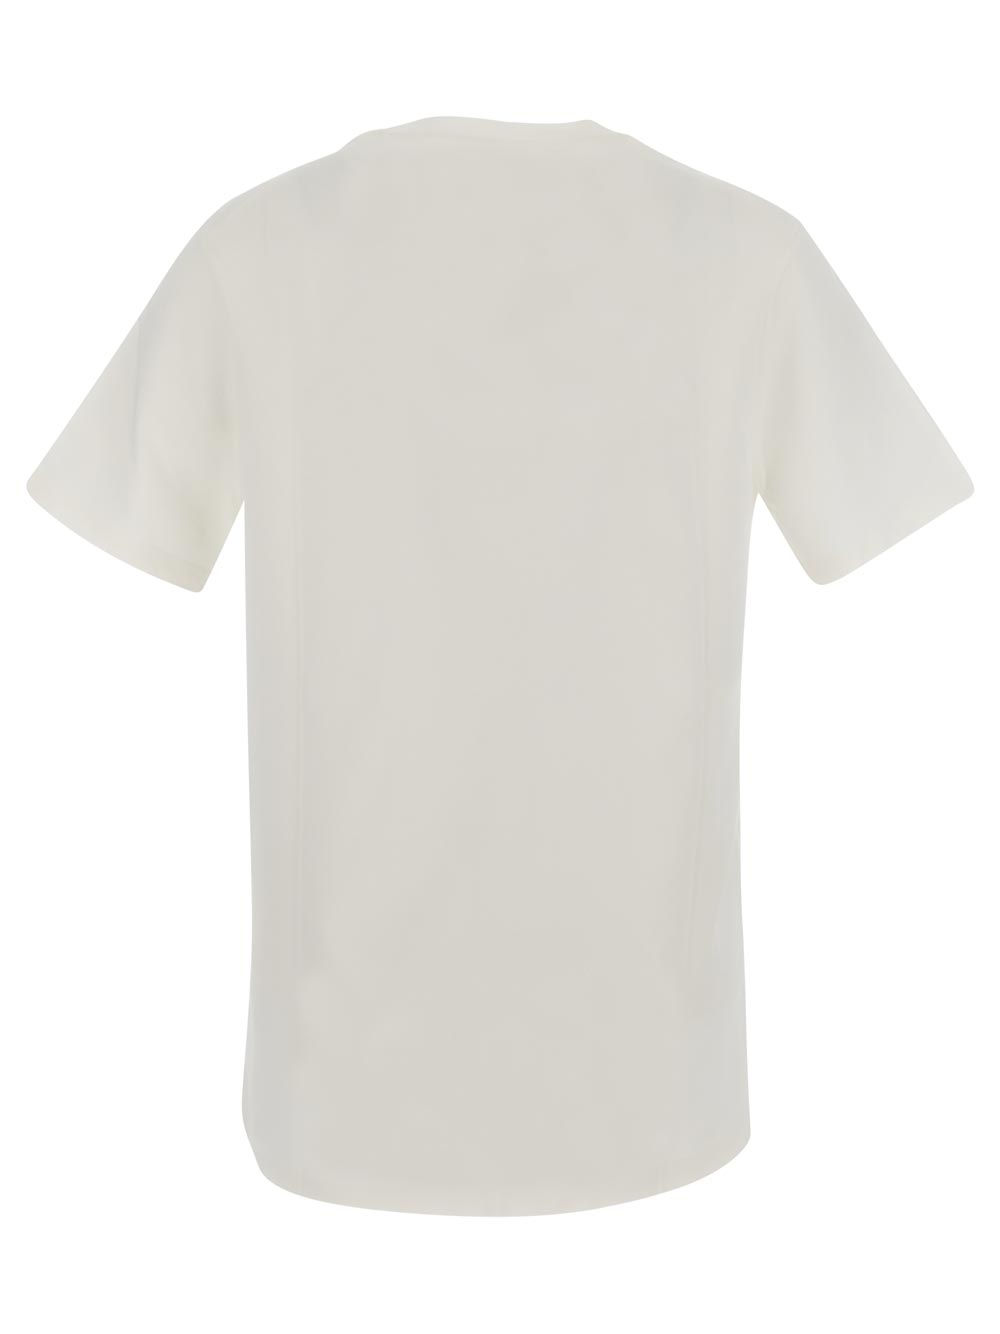 Jil Sander  Cotton Jersey T-Shirt